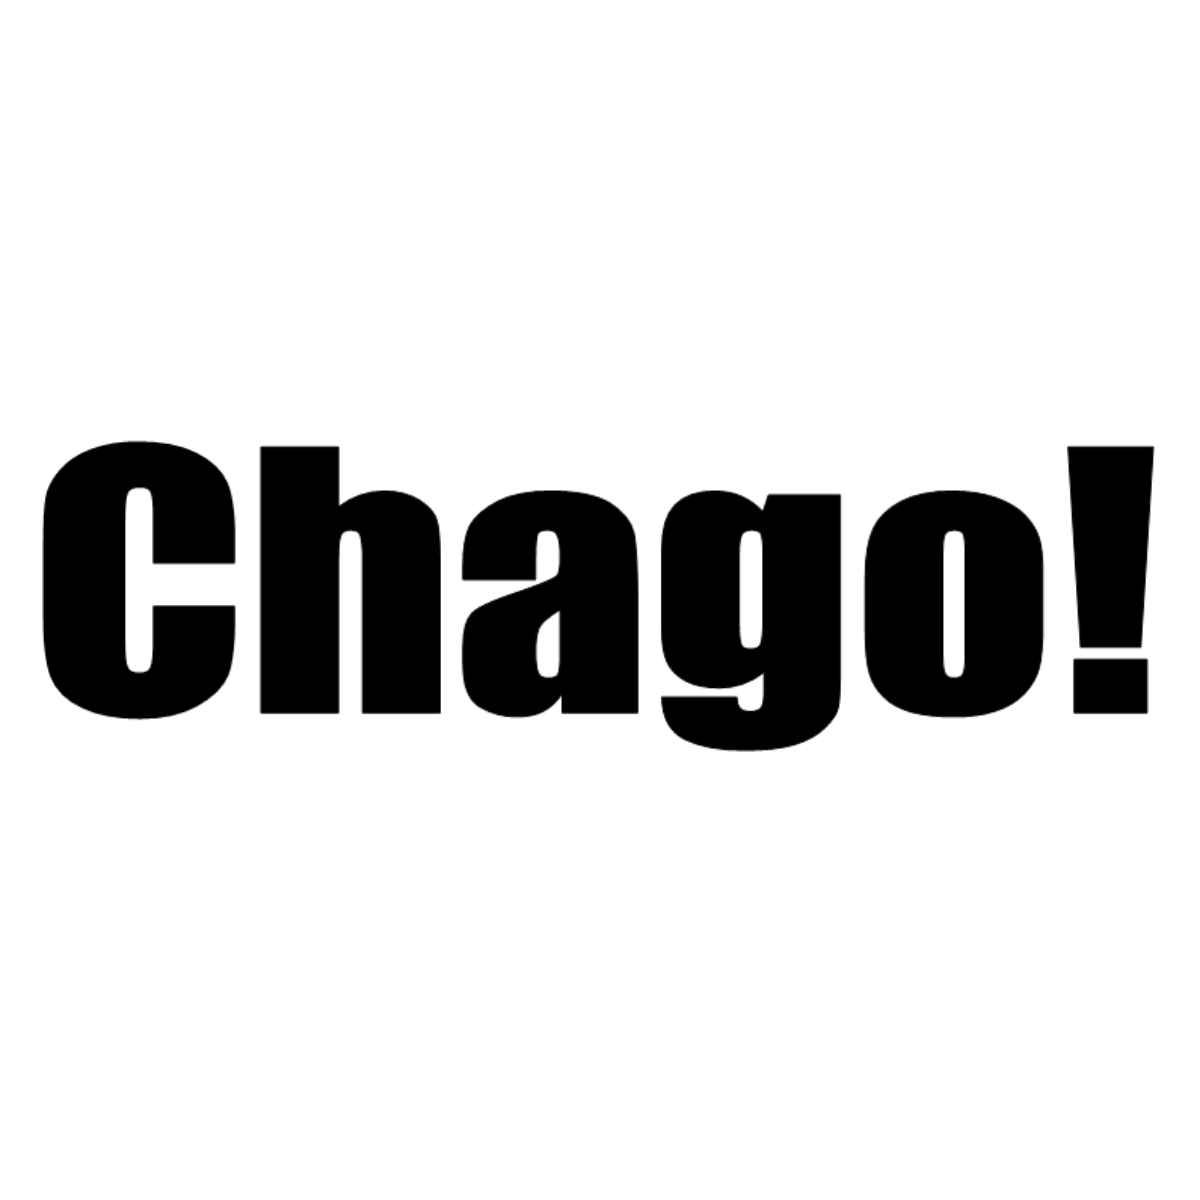 Dekal Chago